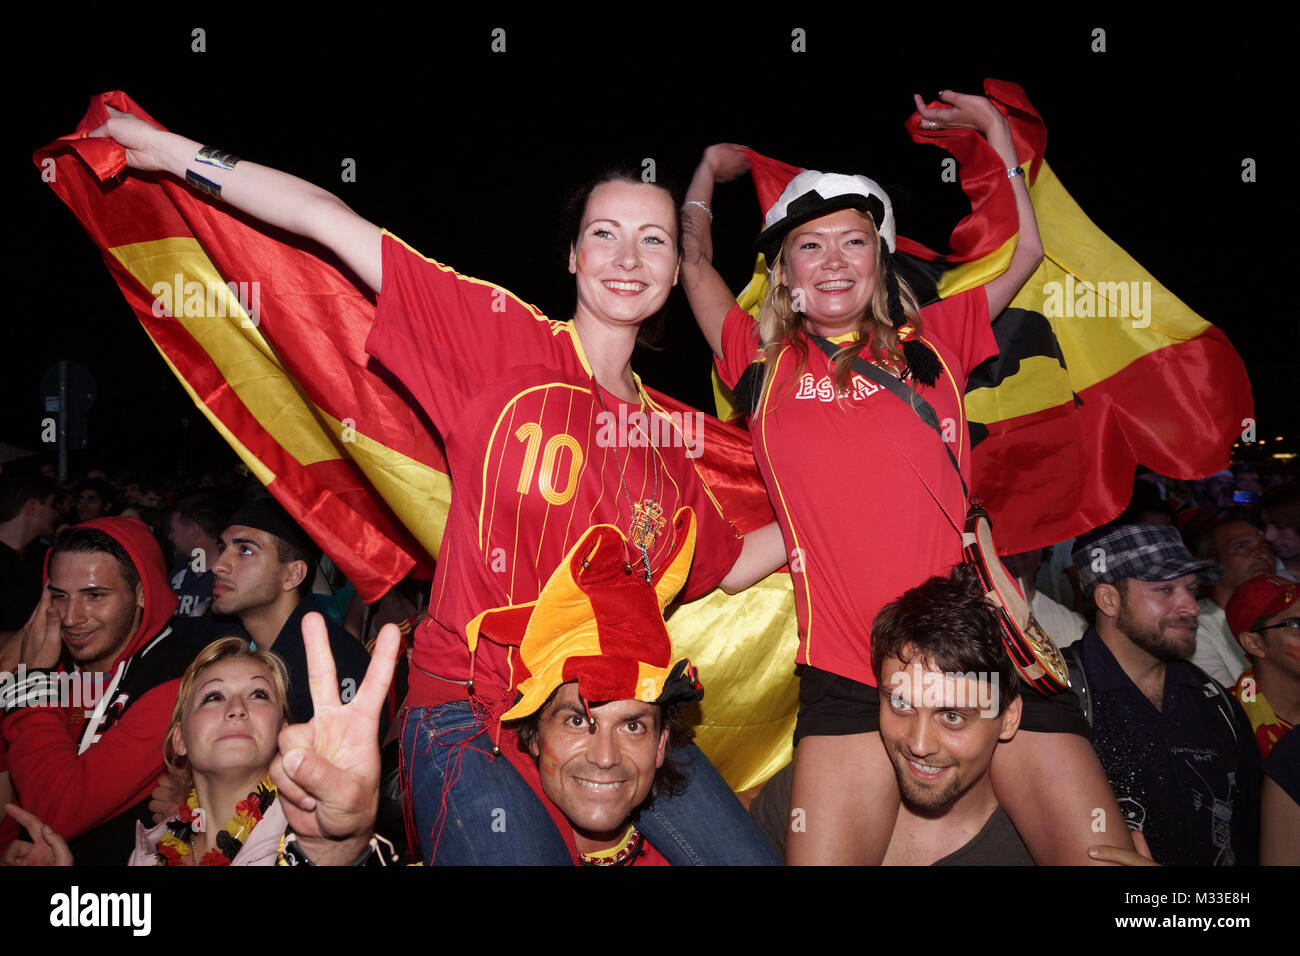 Laut jubelnde Fußballfans beim Sieg von Spanien gegen Italien an der Fanmeile zur Europameisterschaft 2012 am Brandenburger Tor à Berlin. Banque D'Images